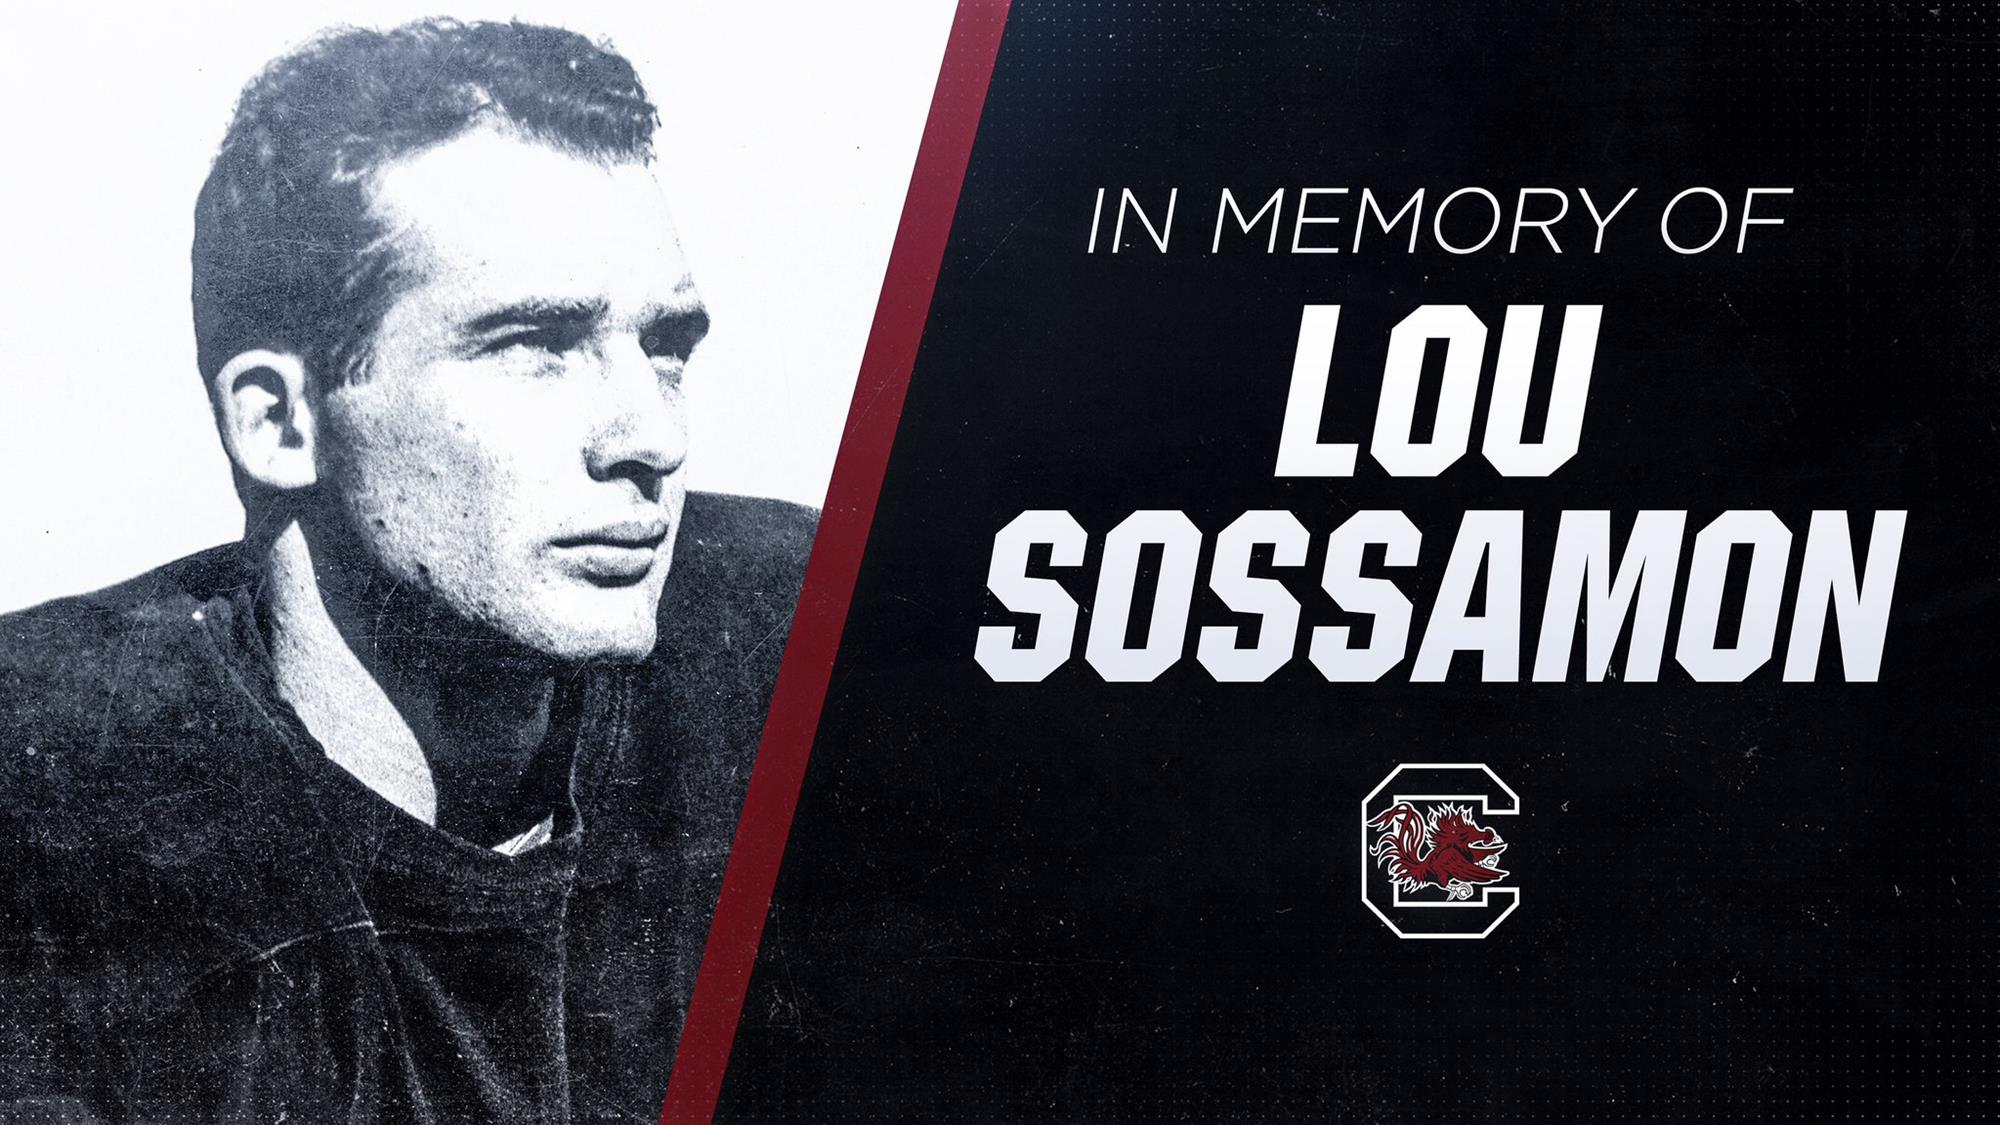 Gamecocks Mourn the Passing of Lou Sossamon